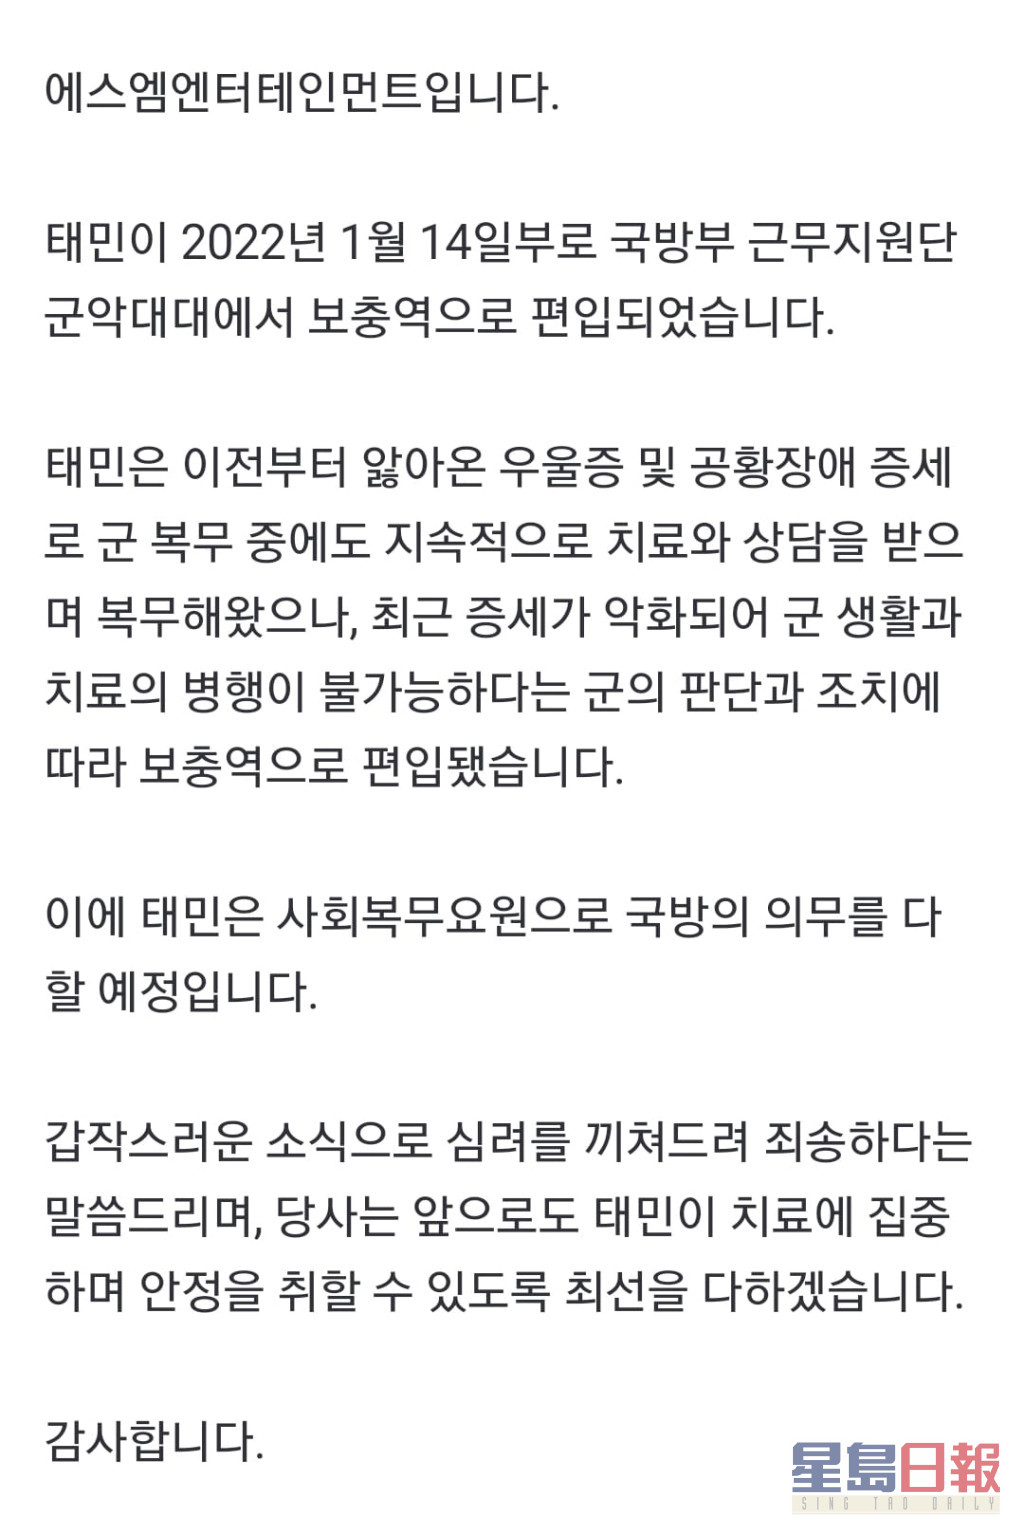 SM娛樂發公告交代泰民作出兵役調動。